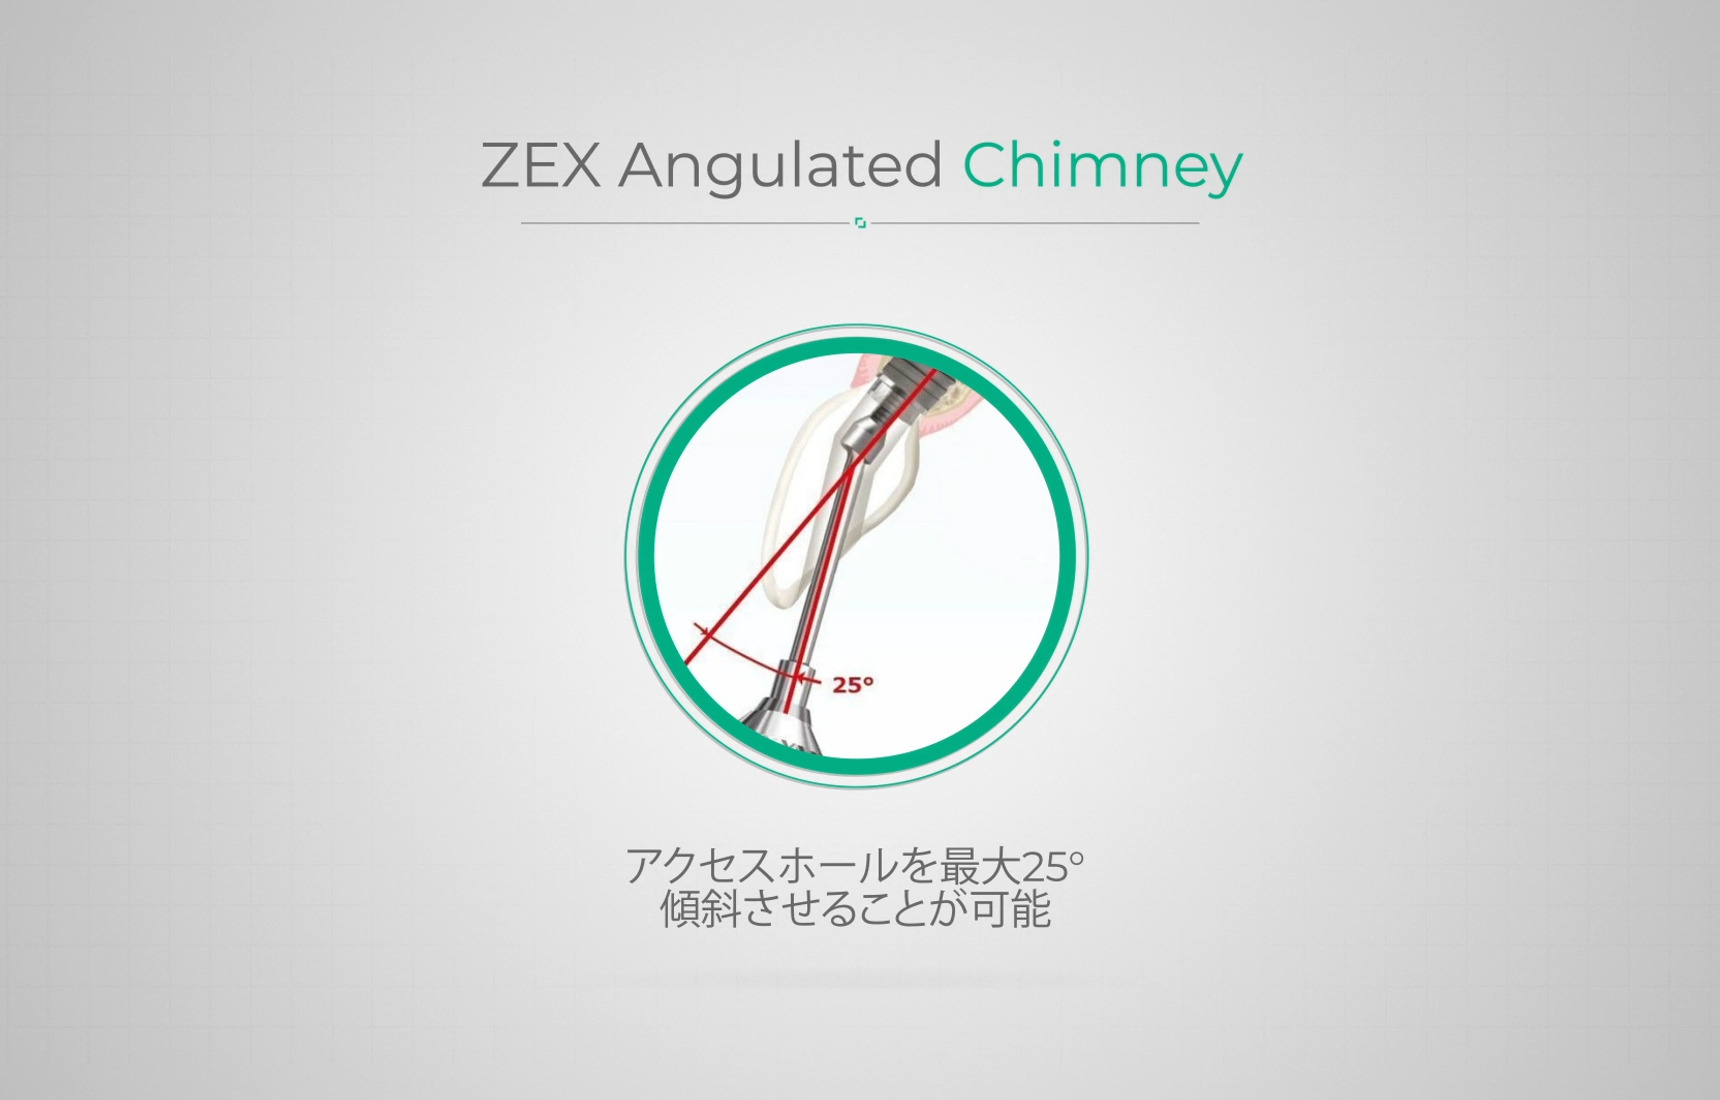 ZAC（ZEX Angulated Chimney）